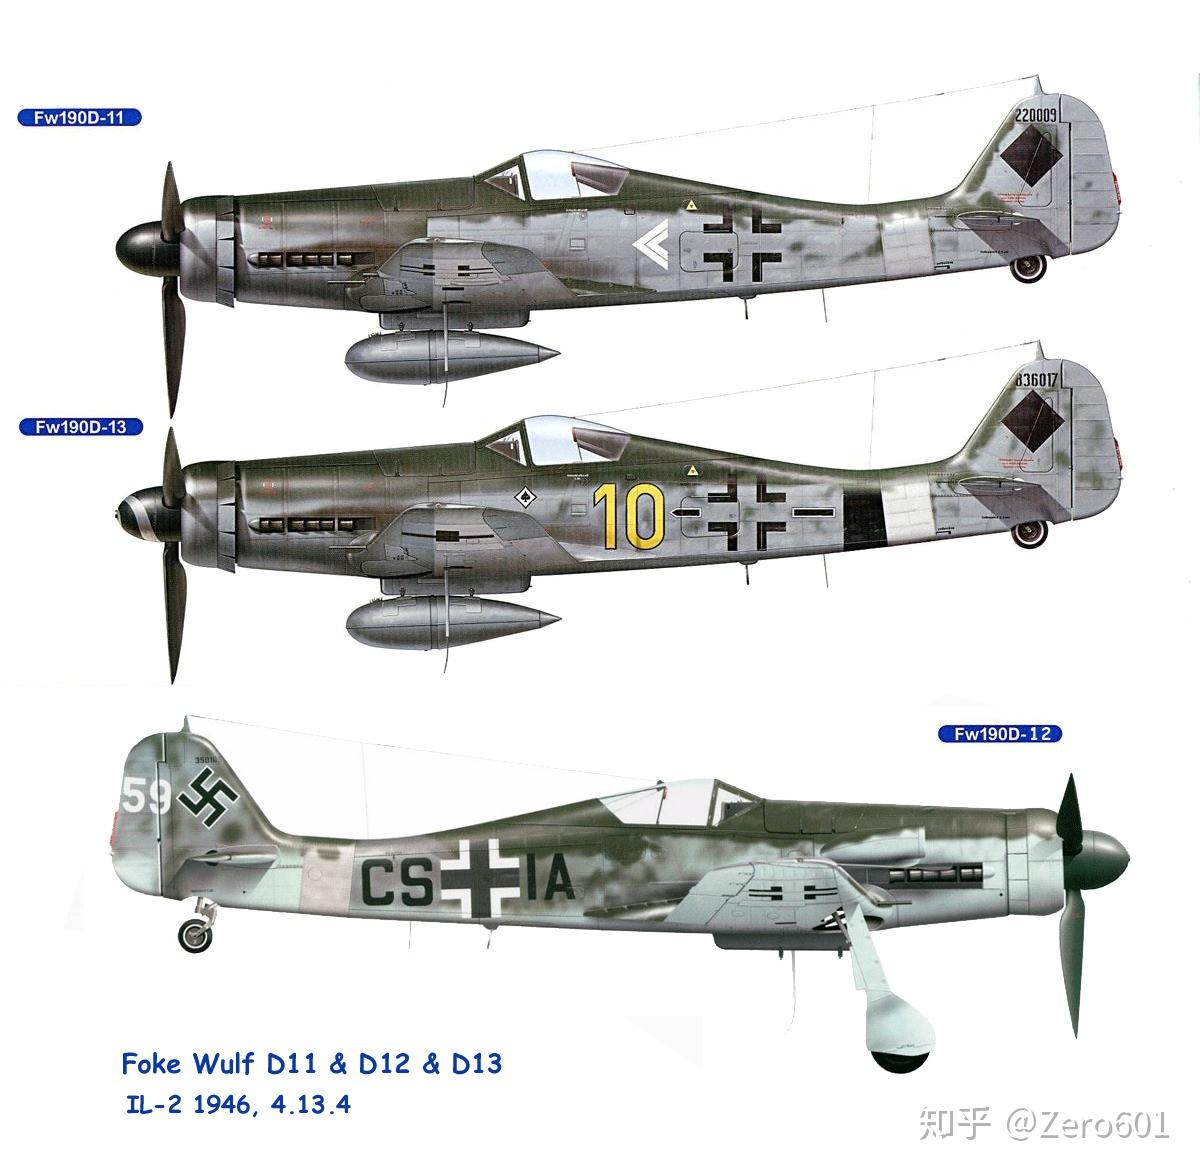 长鼻子多拉——fw 190d系列战斗机的故事(上)